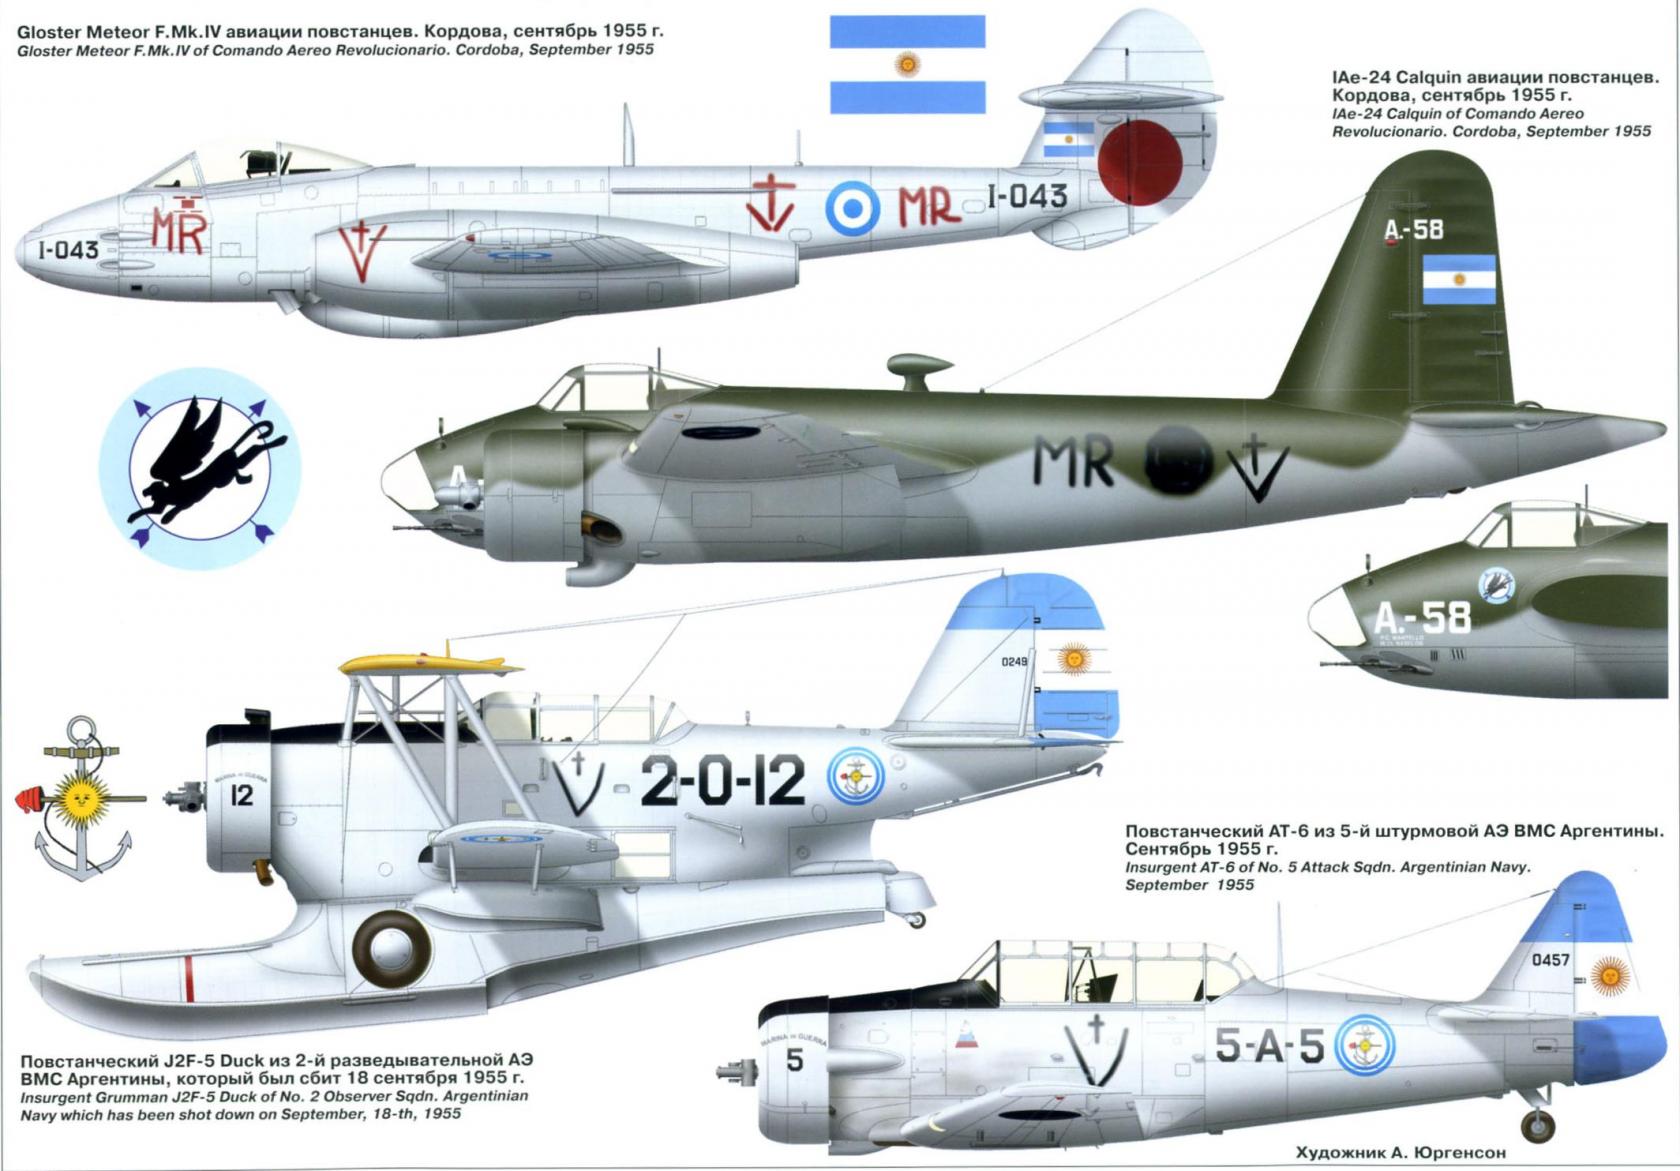 «Разрывы бомб под звуки танго...» История боевого применения авиации Аргентины Часть 2